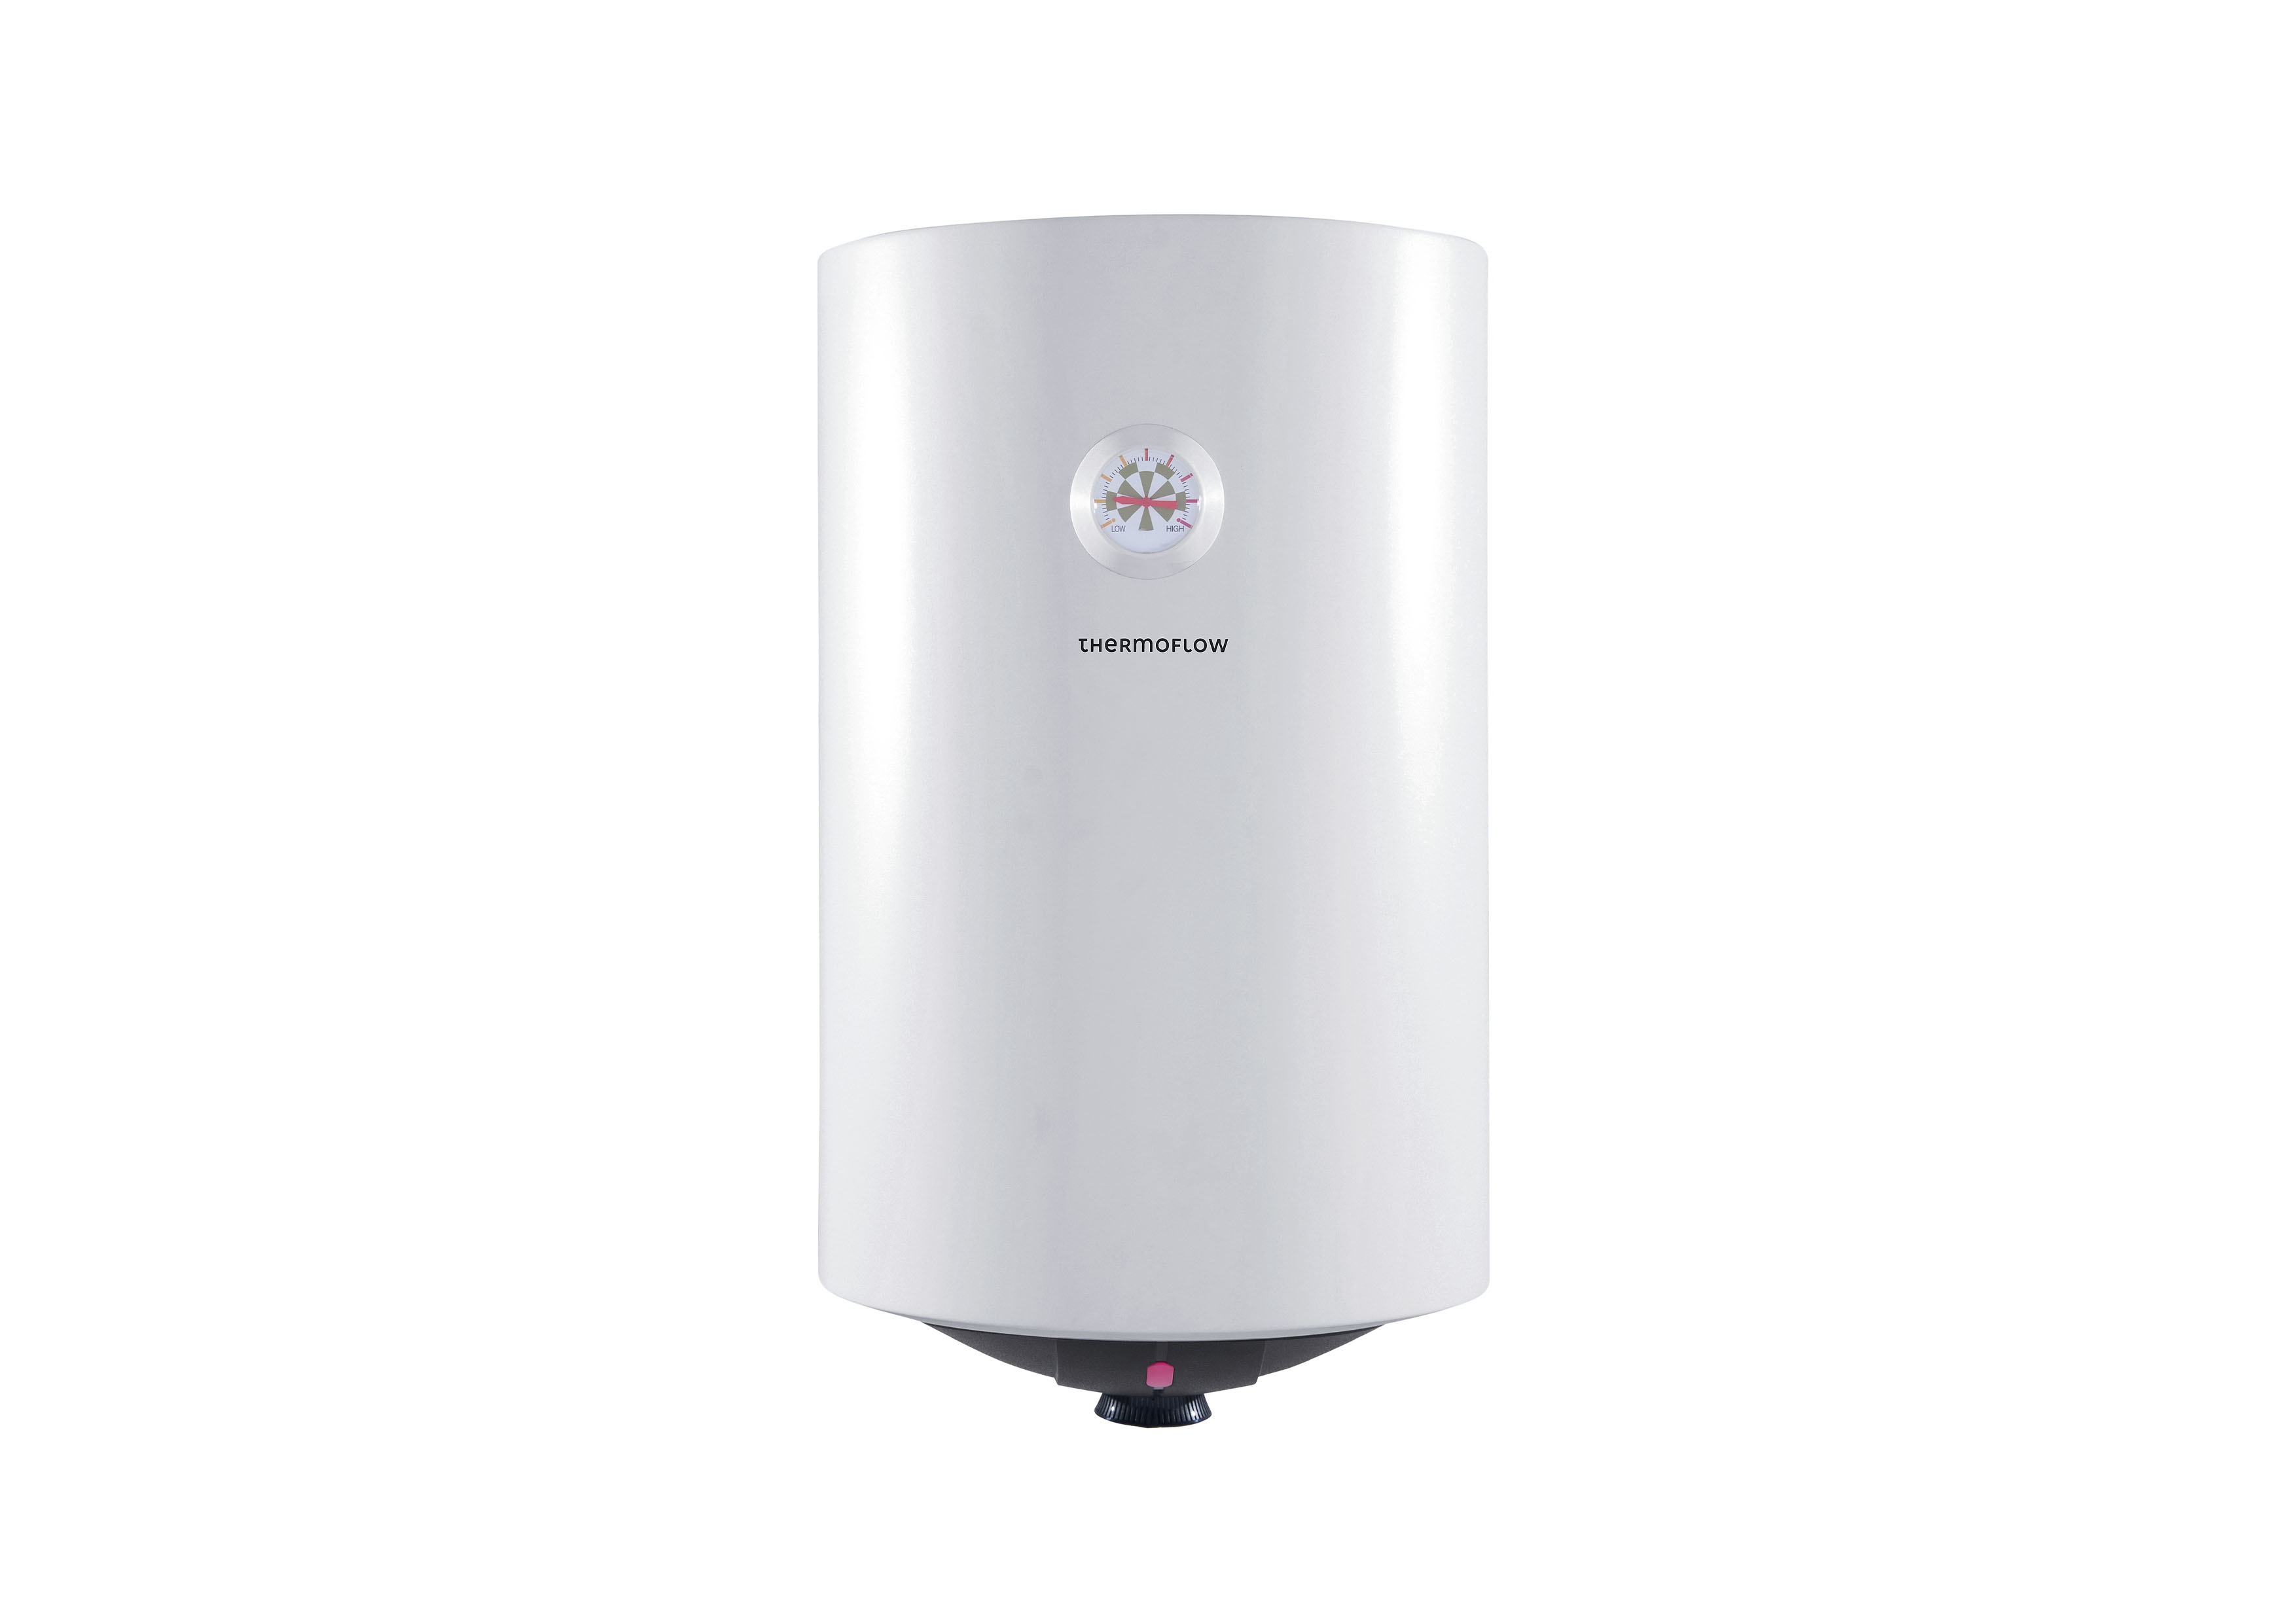 Boiler Warmwasserspeicher 30 L Wandspeicher steckerfertig DS30 2 kW Thermoflow